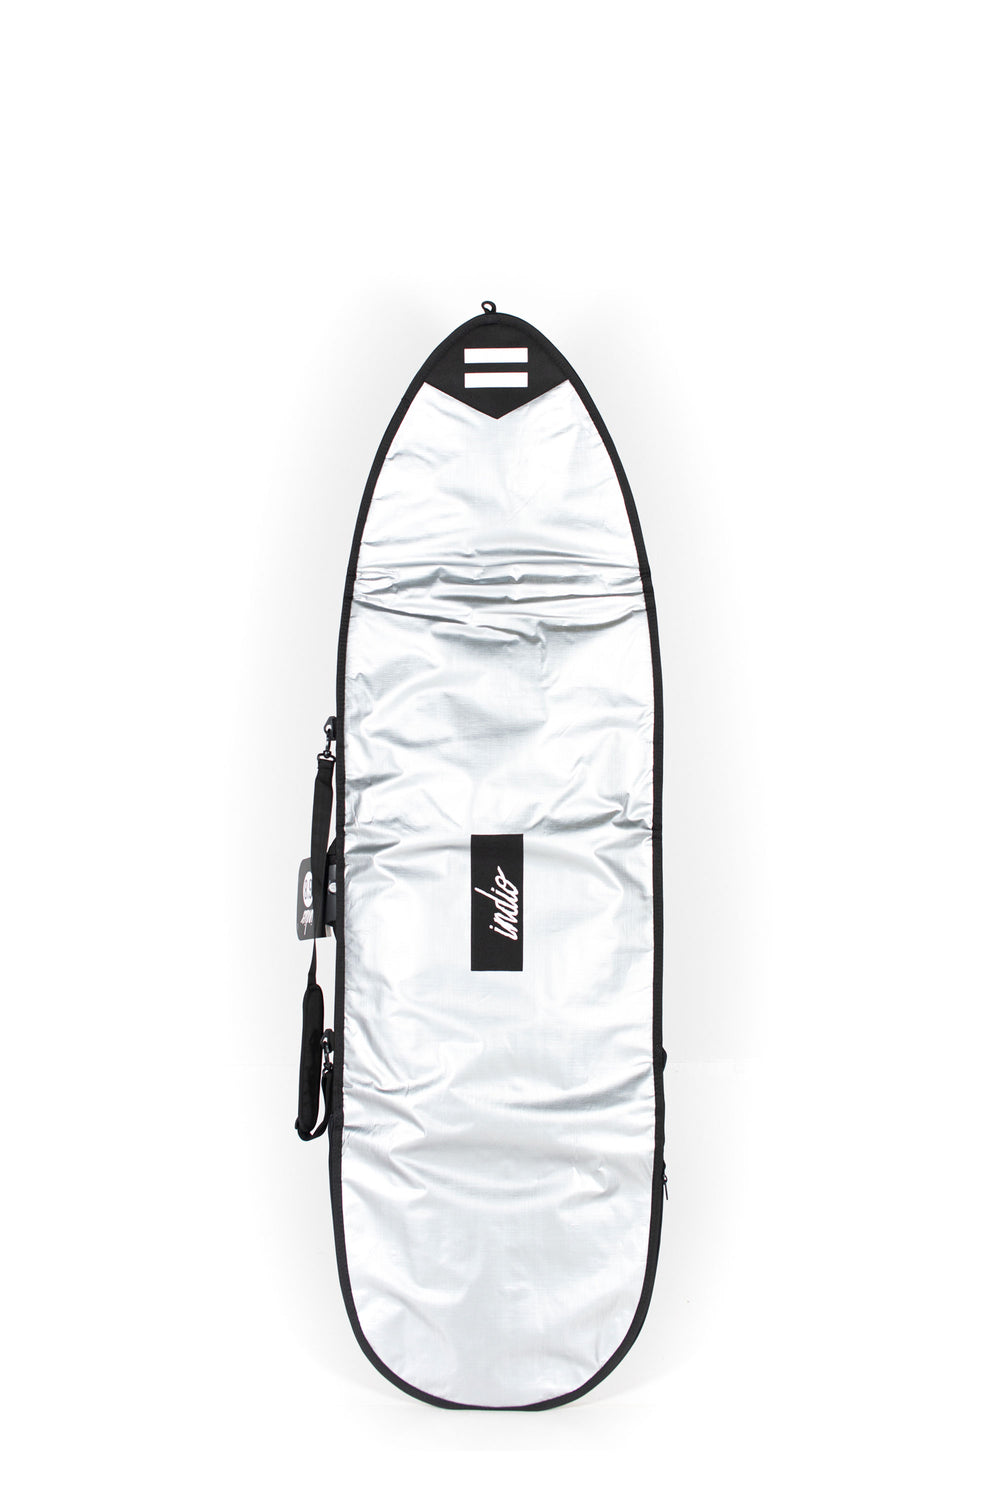     Pukas-Surf-Shop-INDIO-boardbag